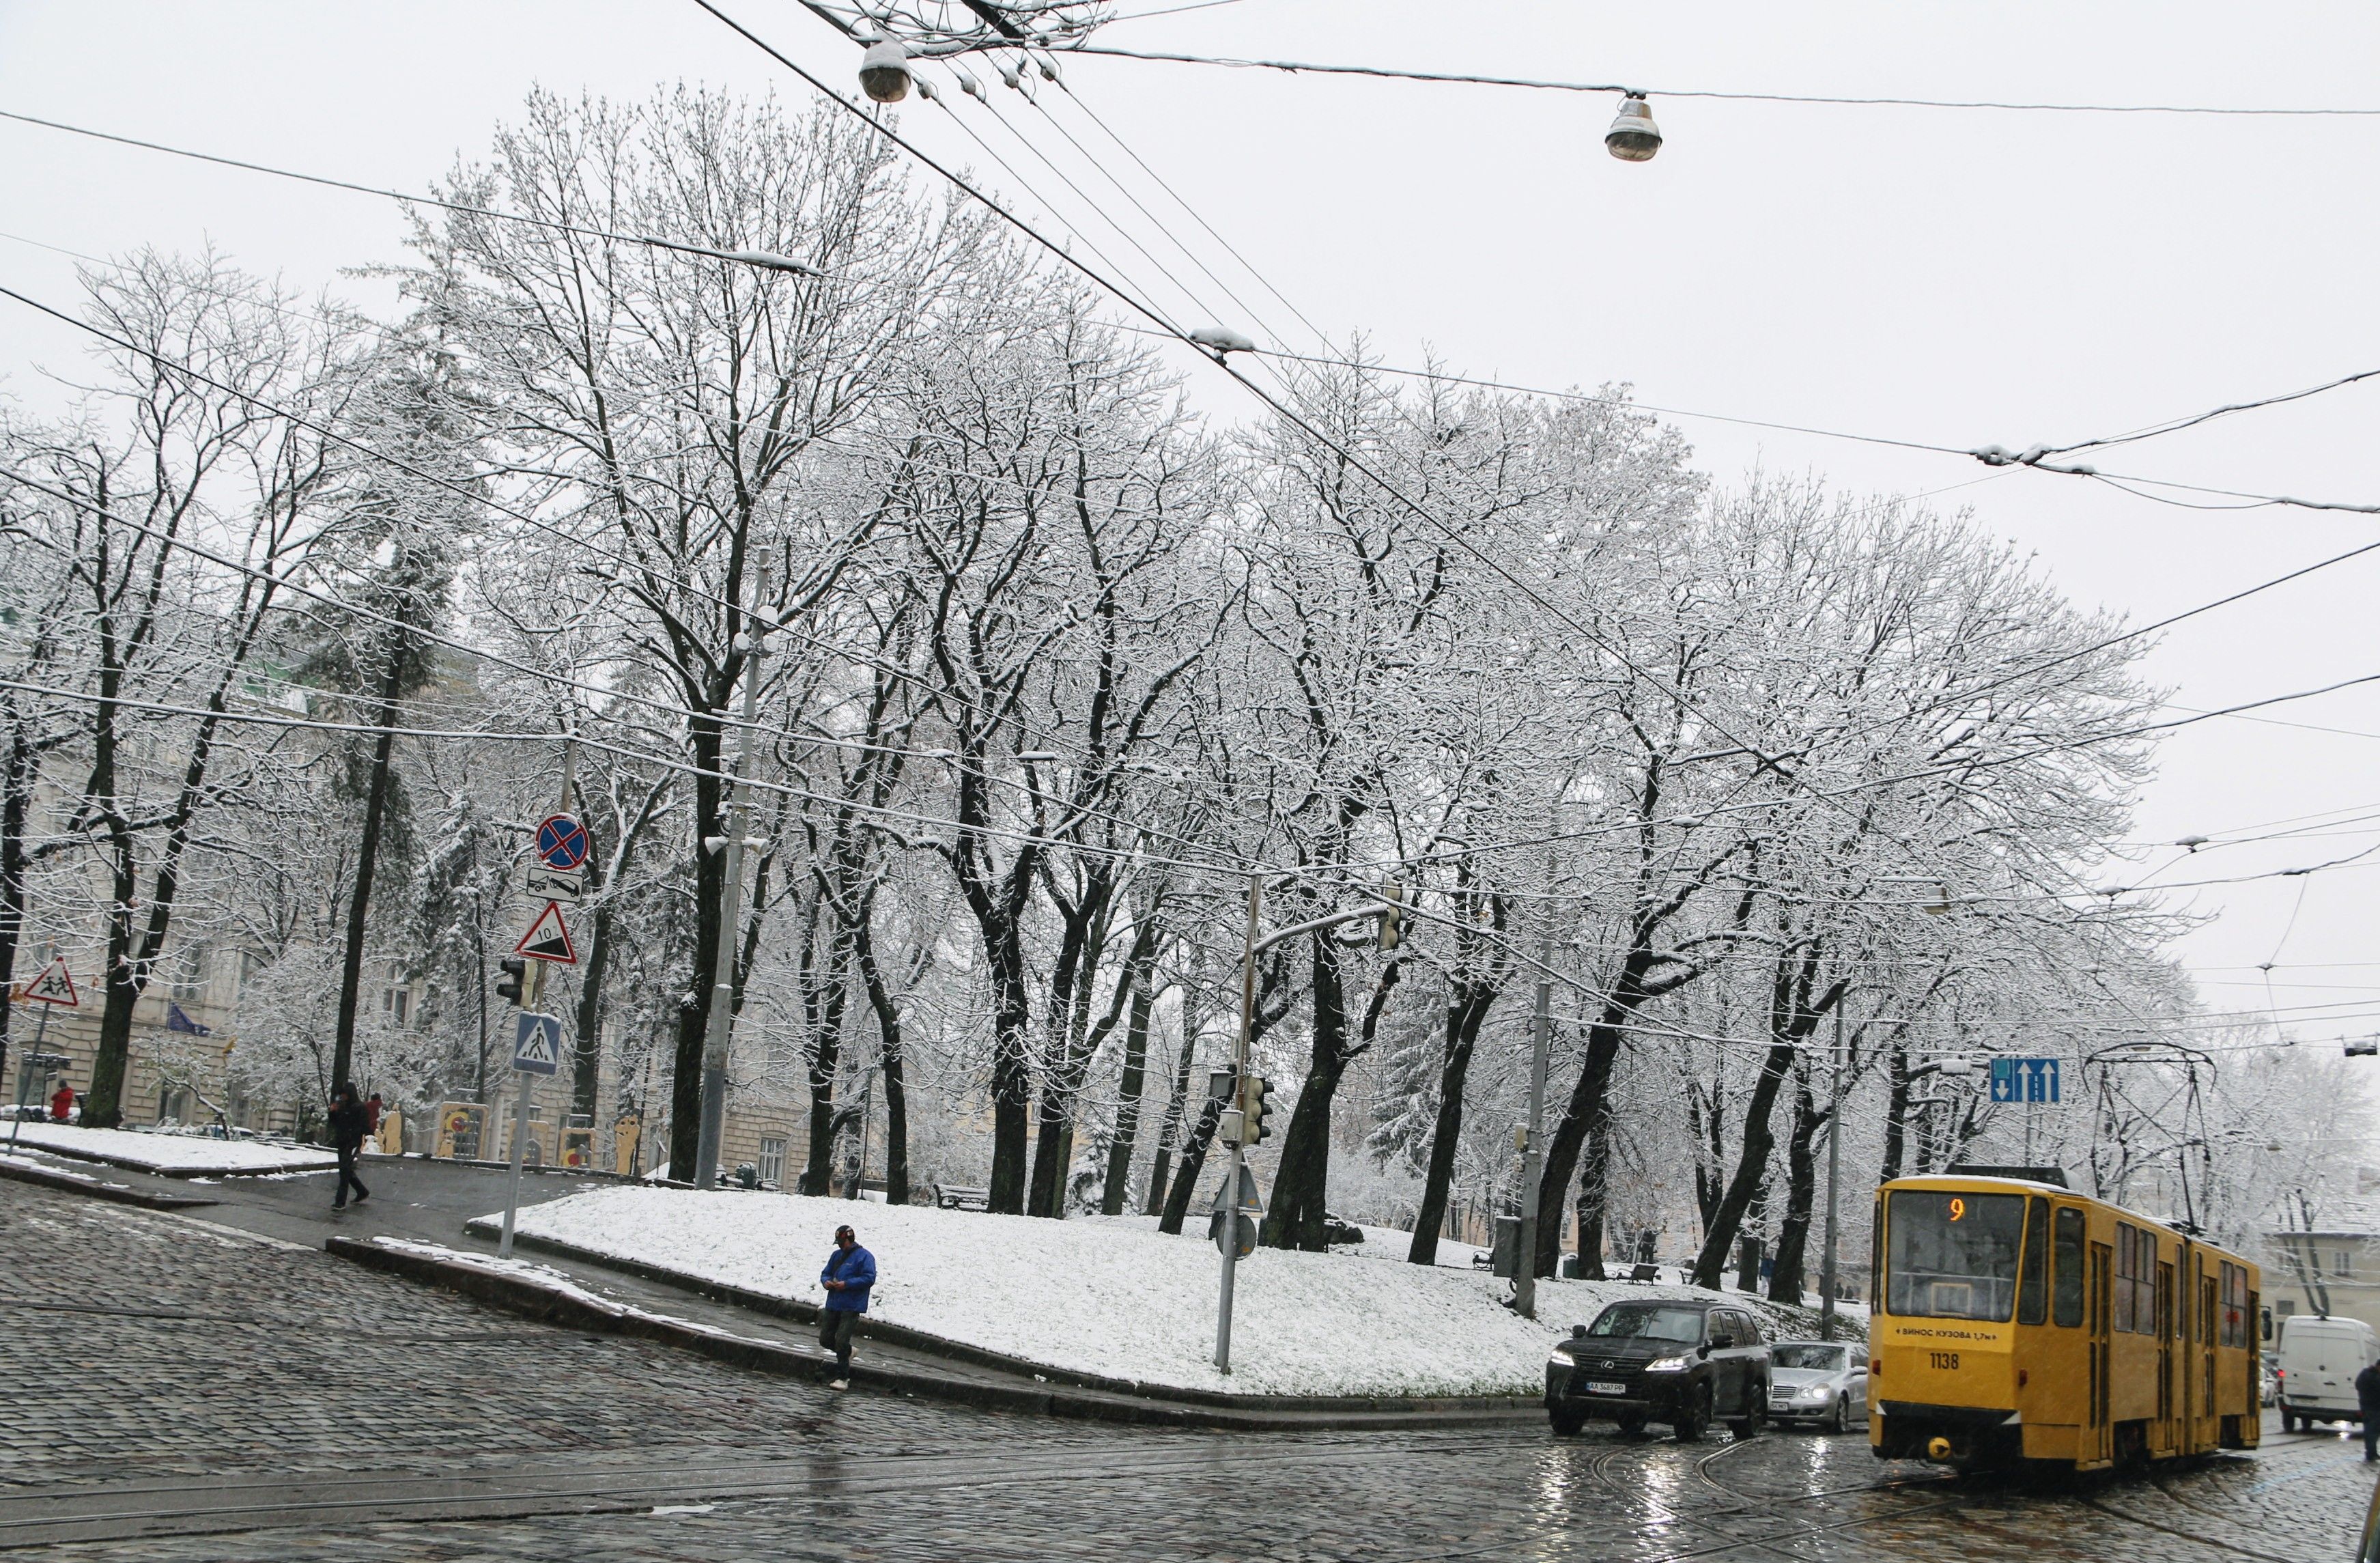 Прогноз погоды в Украине на 16 января.